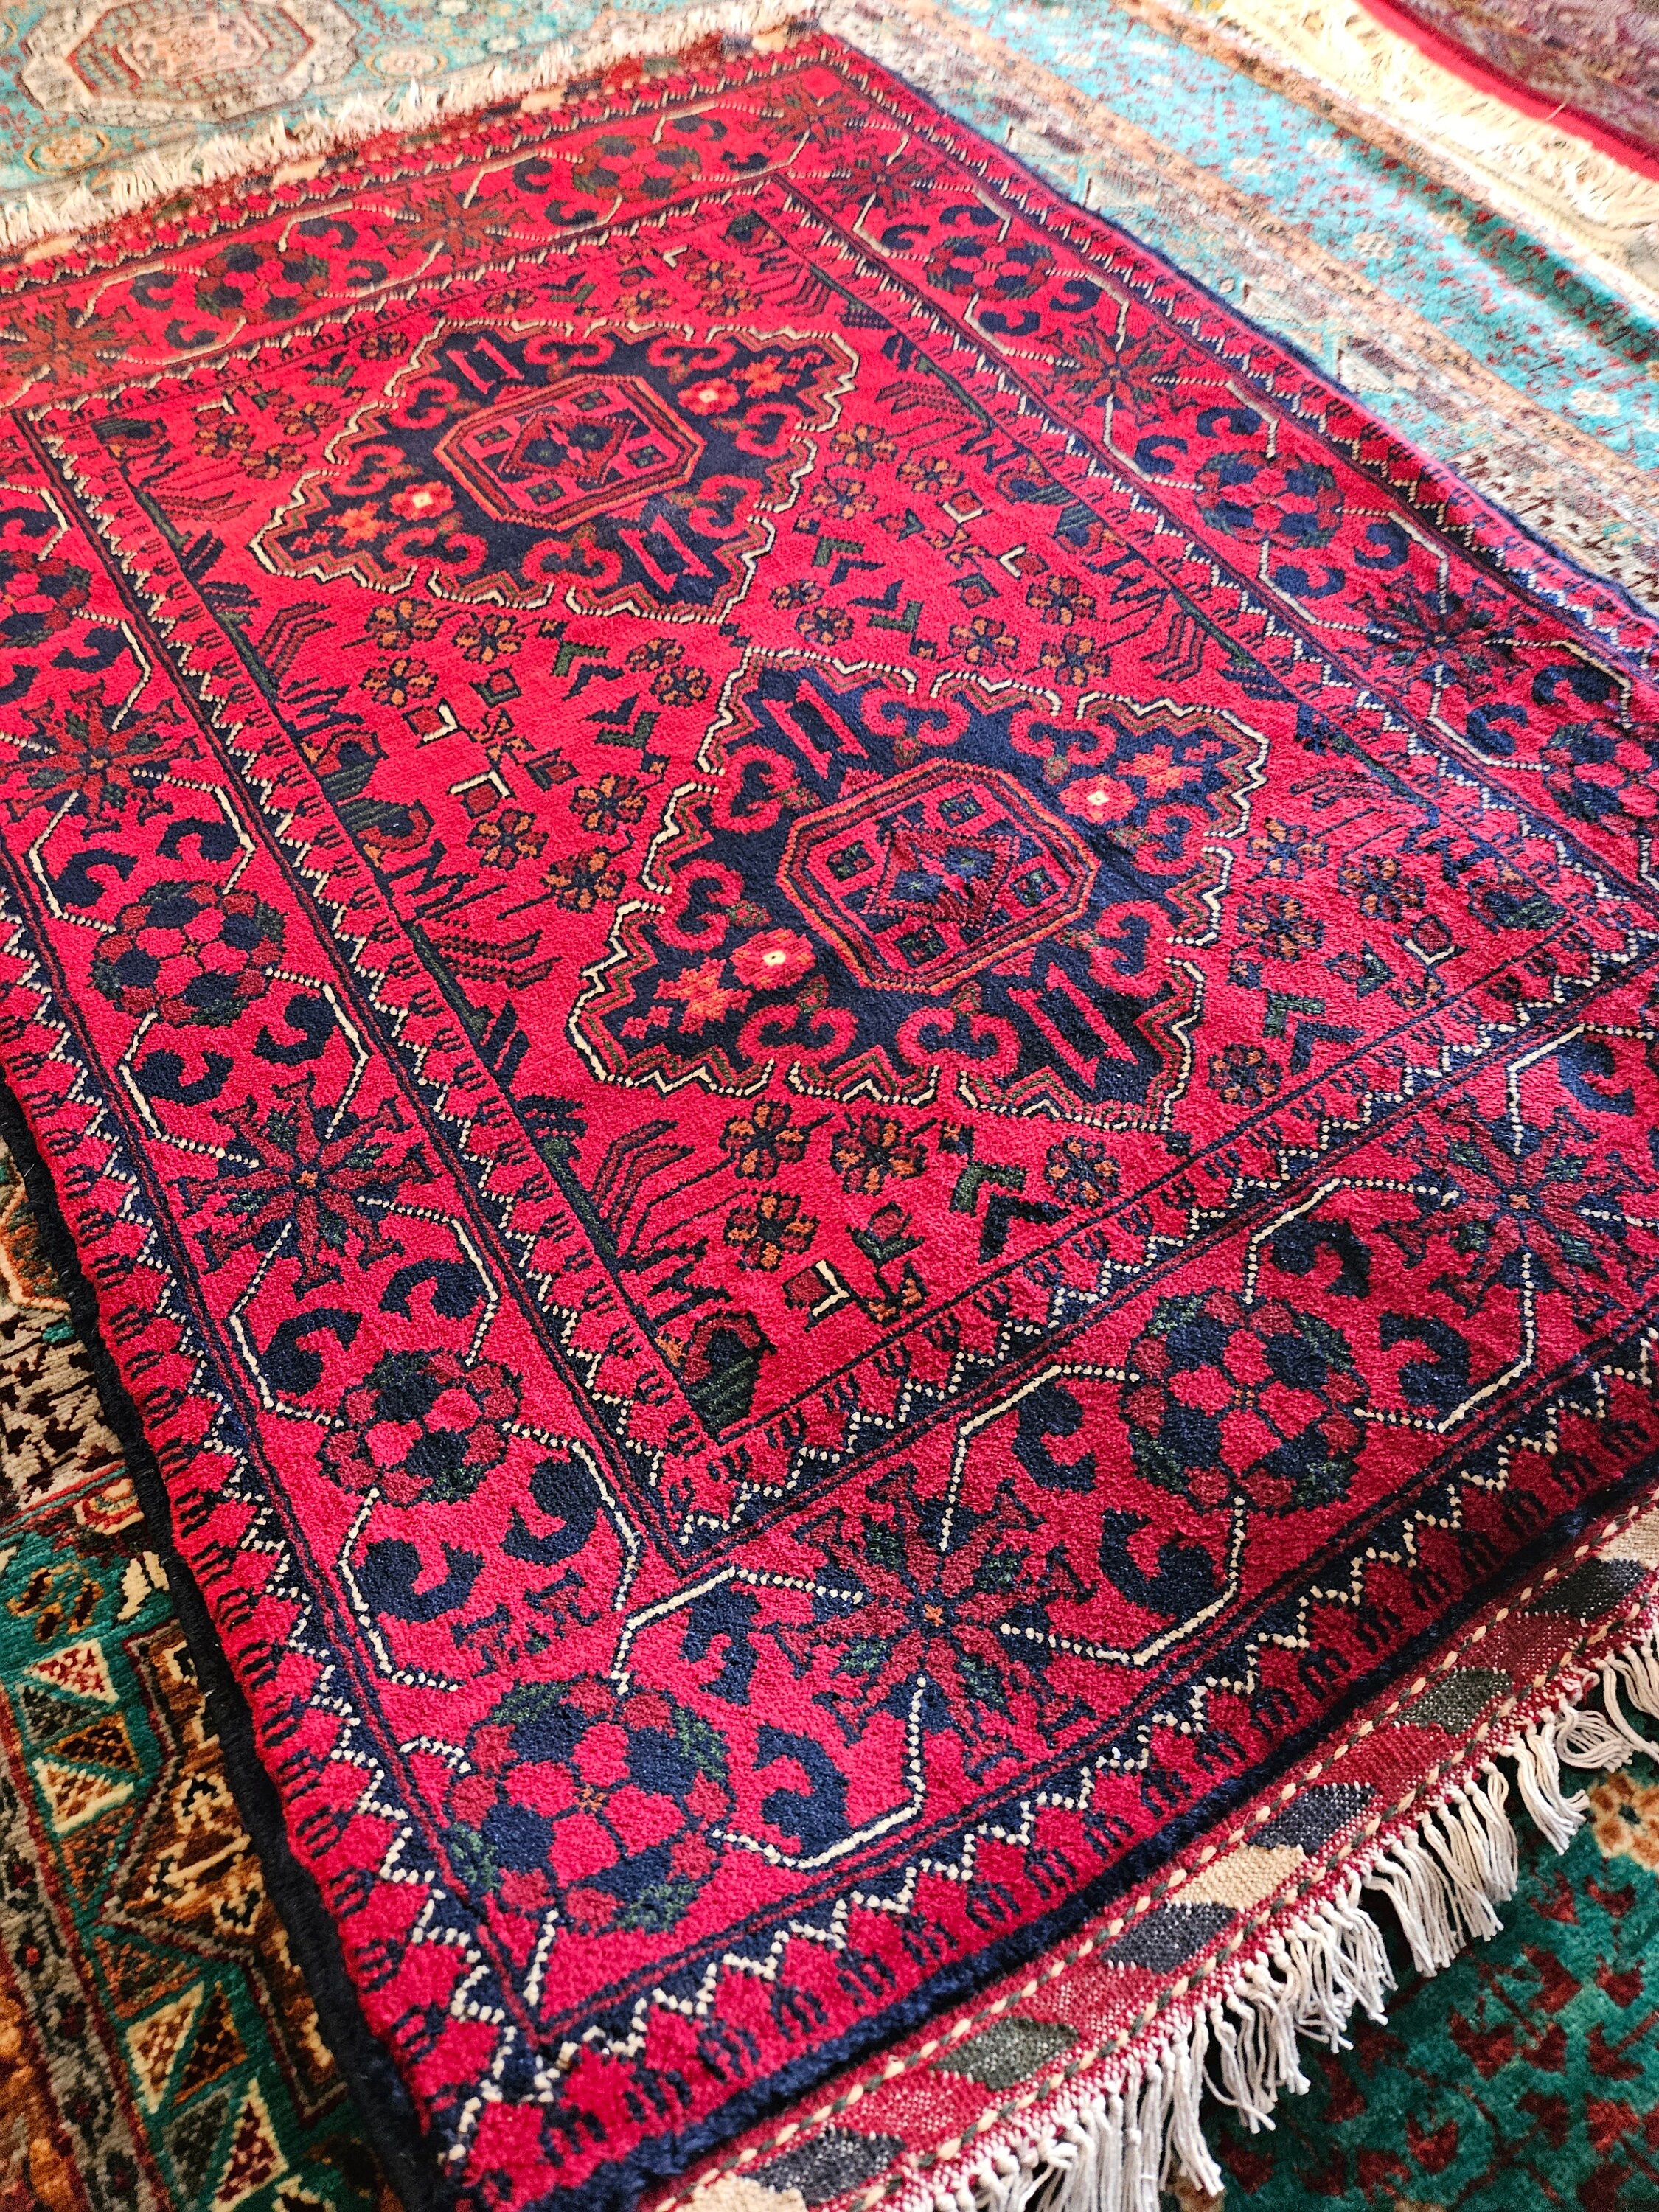 3x4 Small Handmade Afghan Rug, vintage rug, abstract rug, washable, vintage carpet, rustic decor, moss rug, traditional rug, eco-friendly